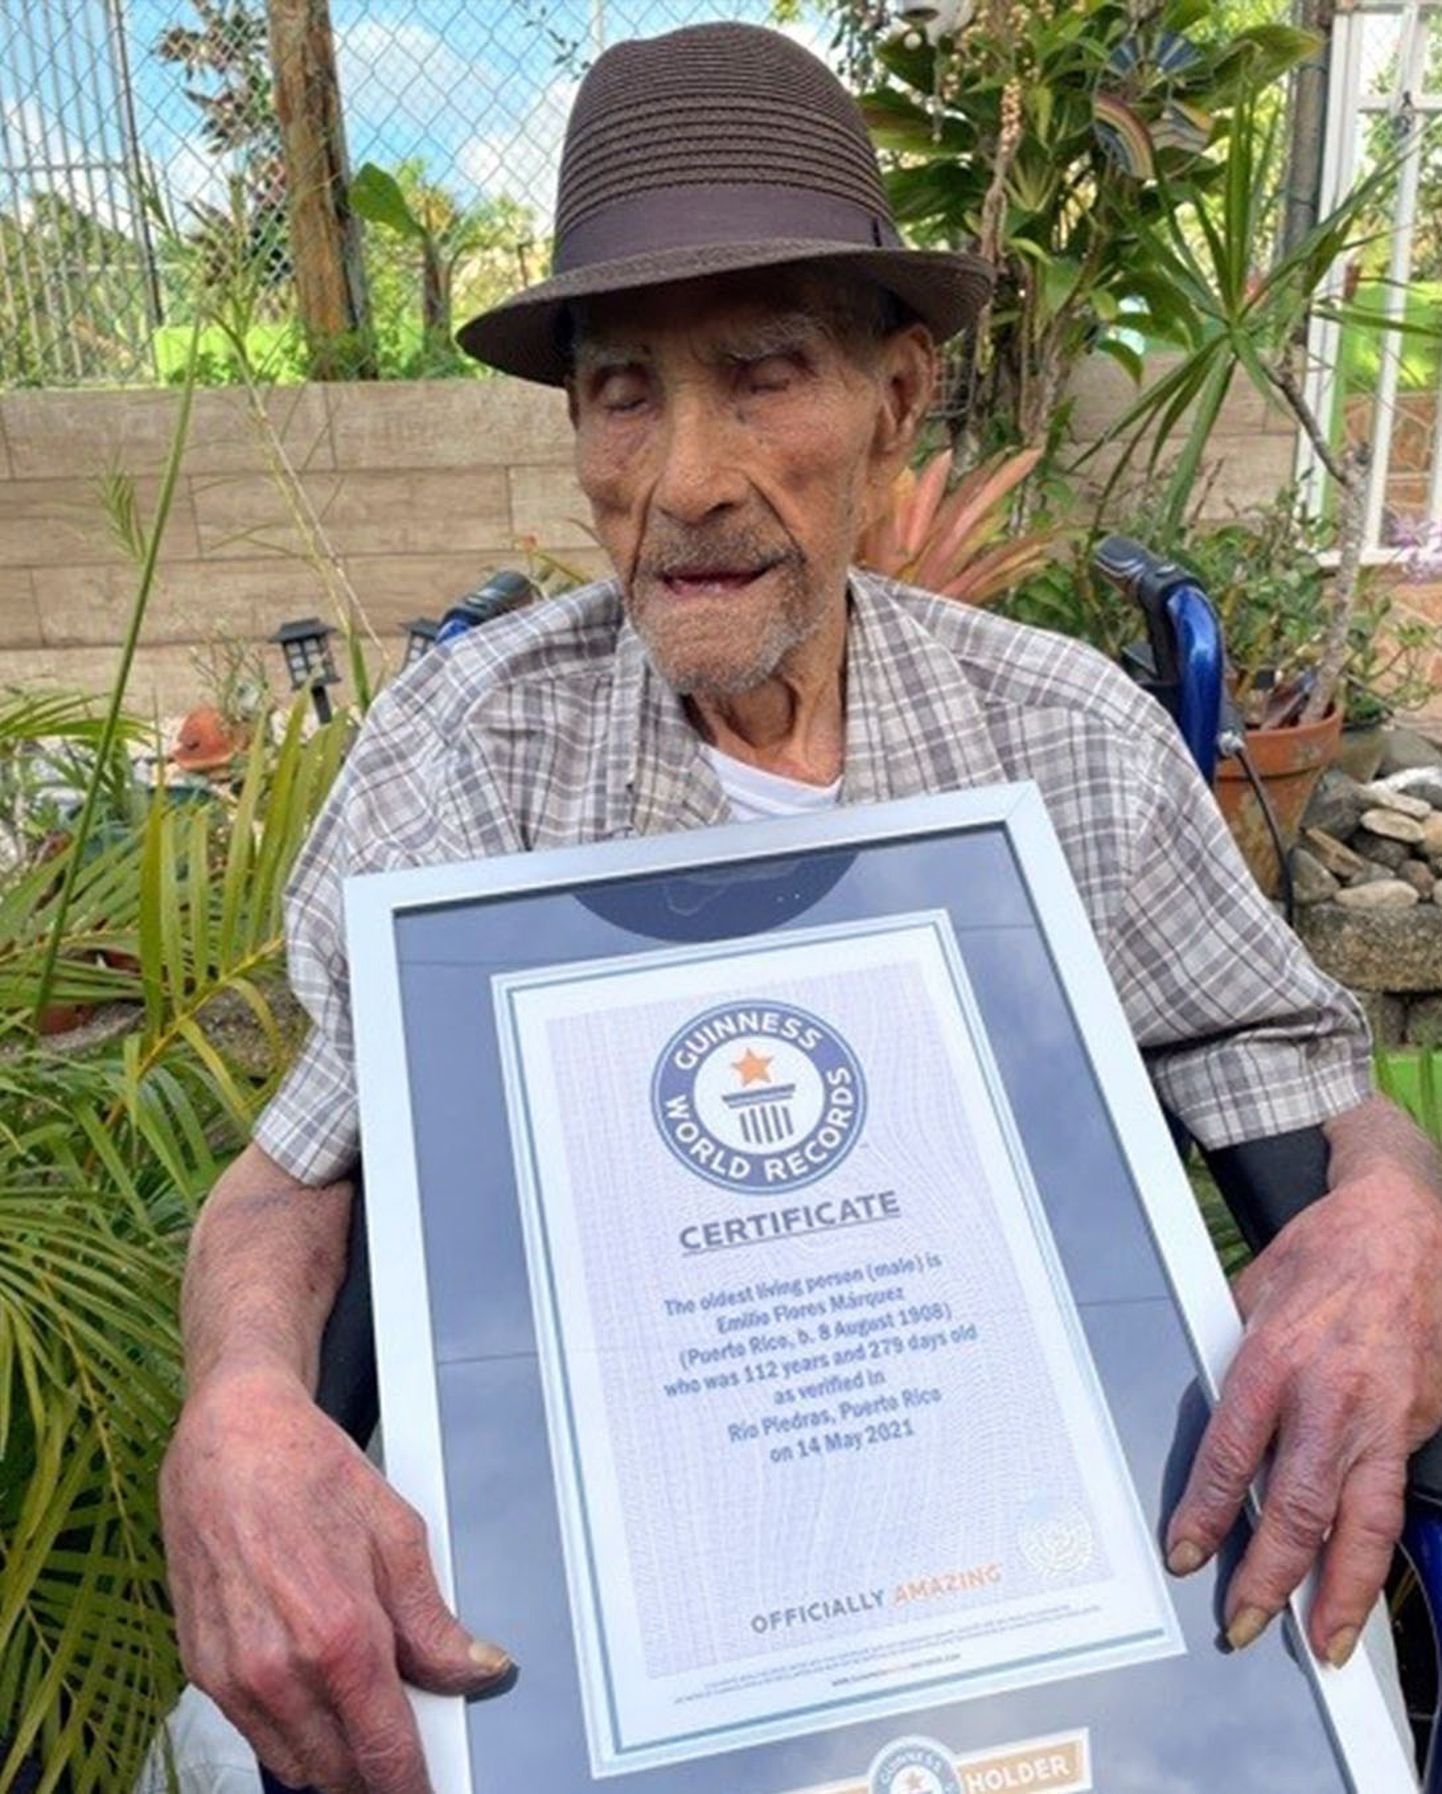 Guinnessi rekordite organisatsioon kinnitas, et maailma vanim elusolev mees on puertoricolane Emilio Flores Marquez, kes on 112-aastane